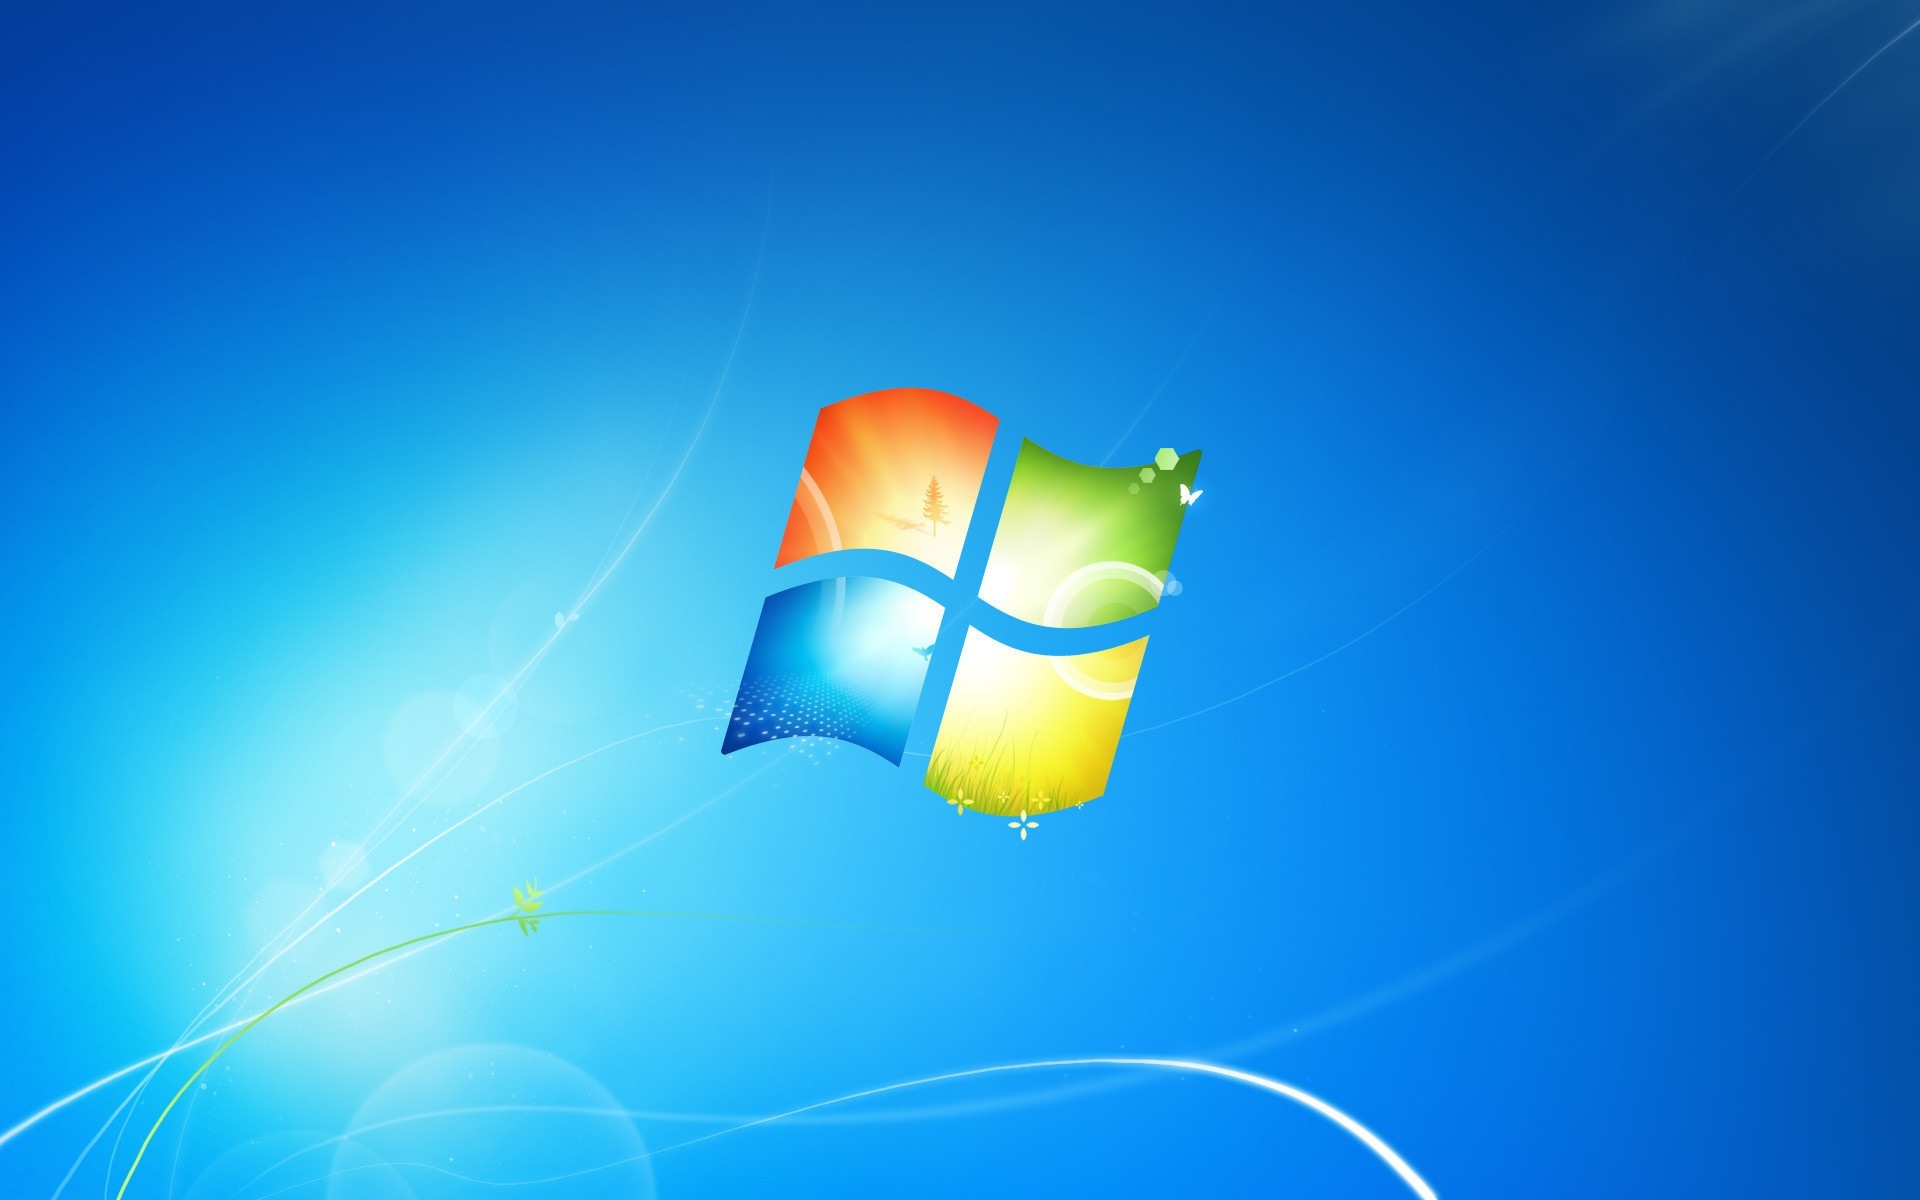 KB4493472 für Windows 7: Patchday-Update bereitet viele Probleme